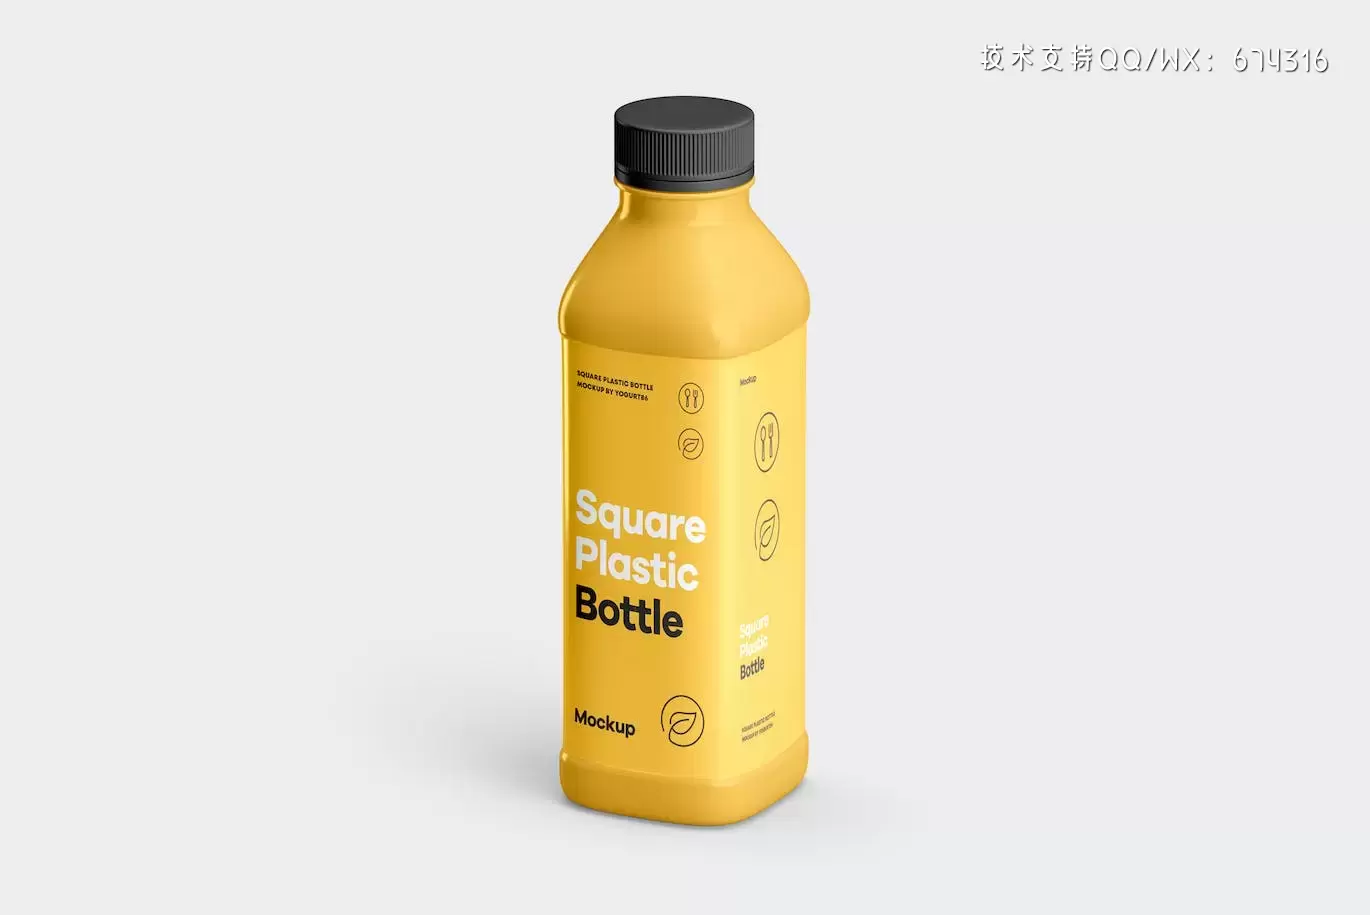 时尚高端逼真质感的方形塑料瓶子包装设计VI样机展示模型mockups插图6